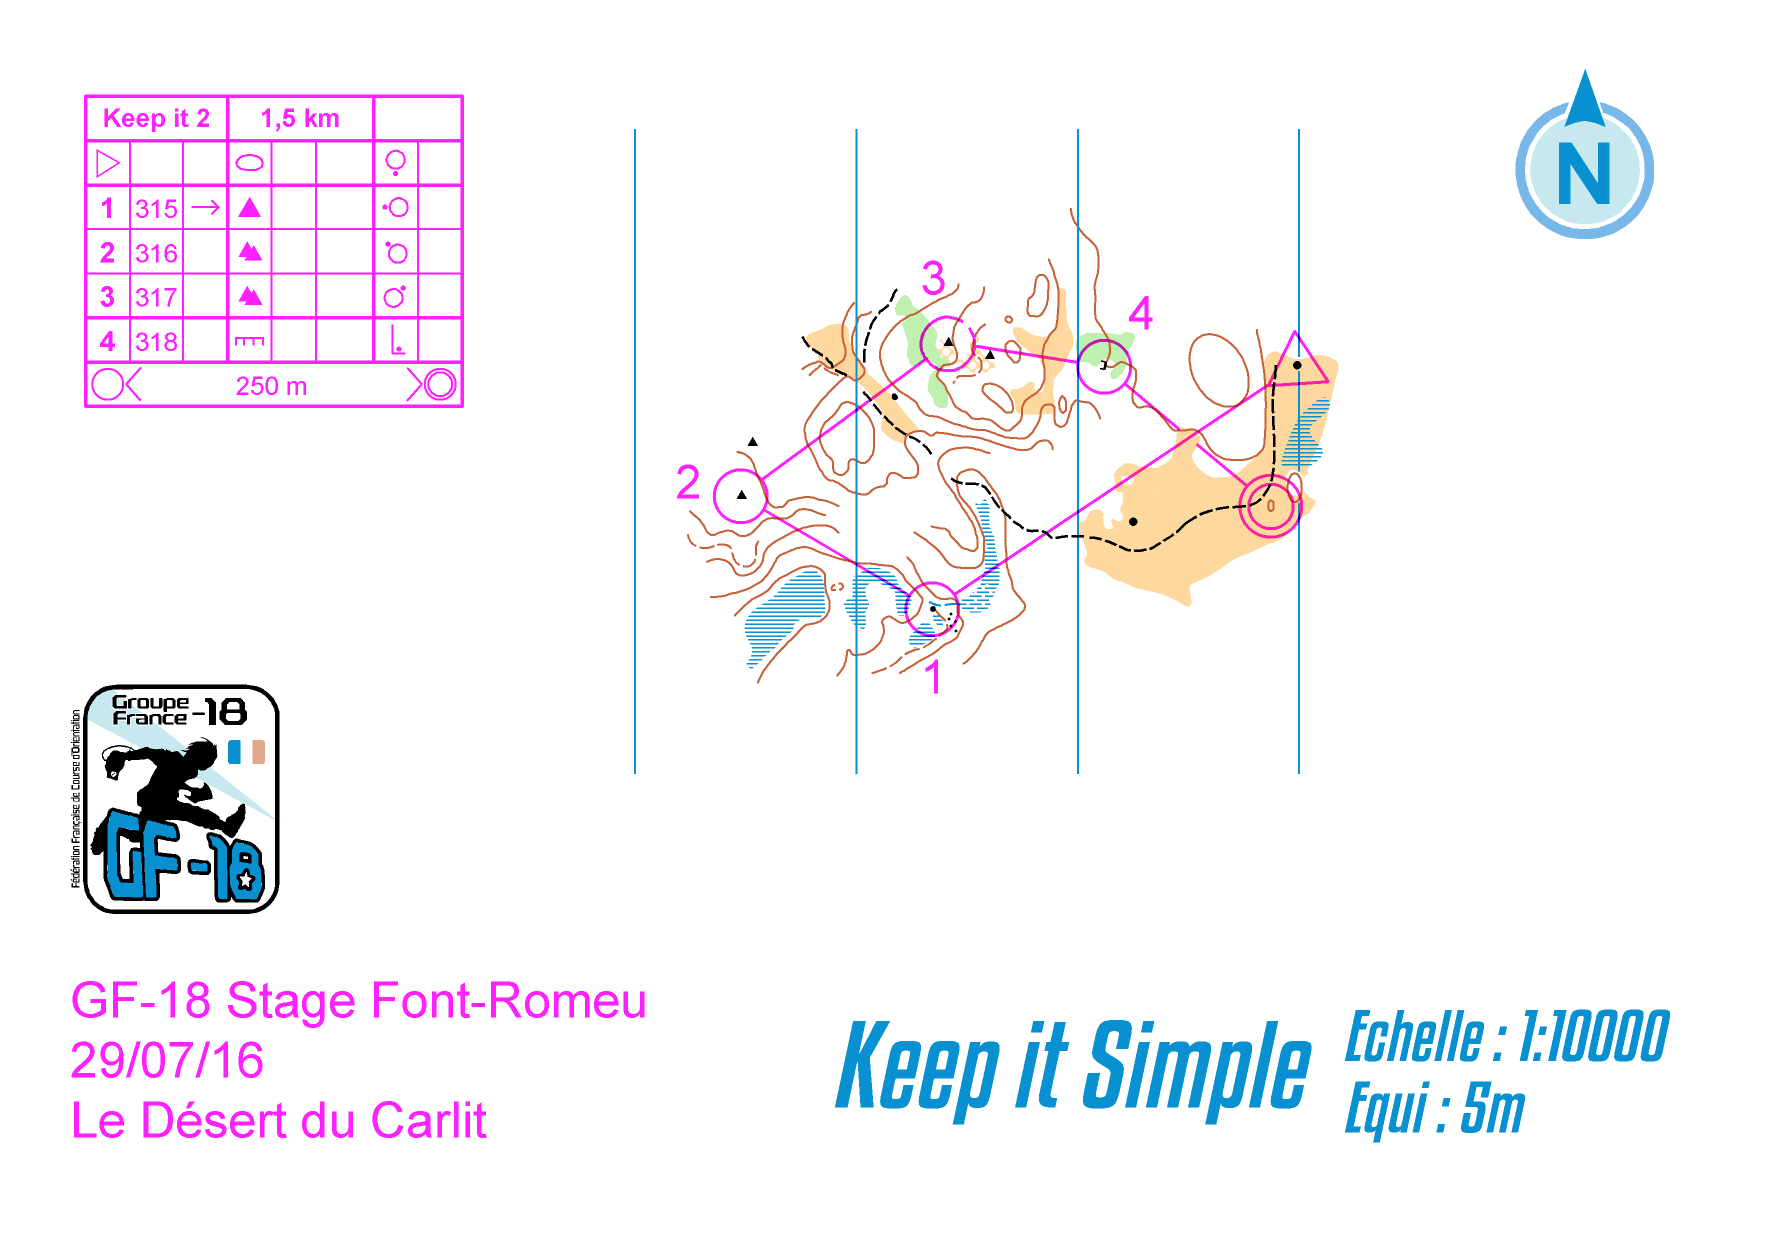 keep it simple 2 (28/08/2016)